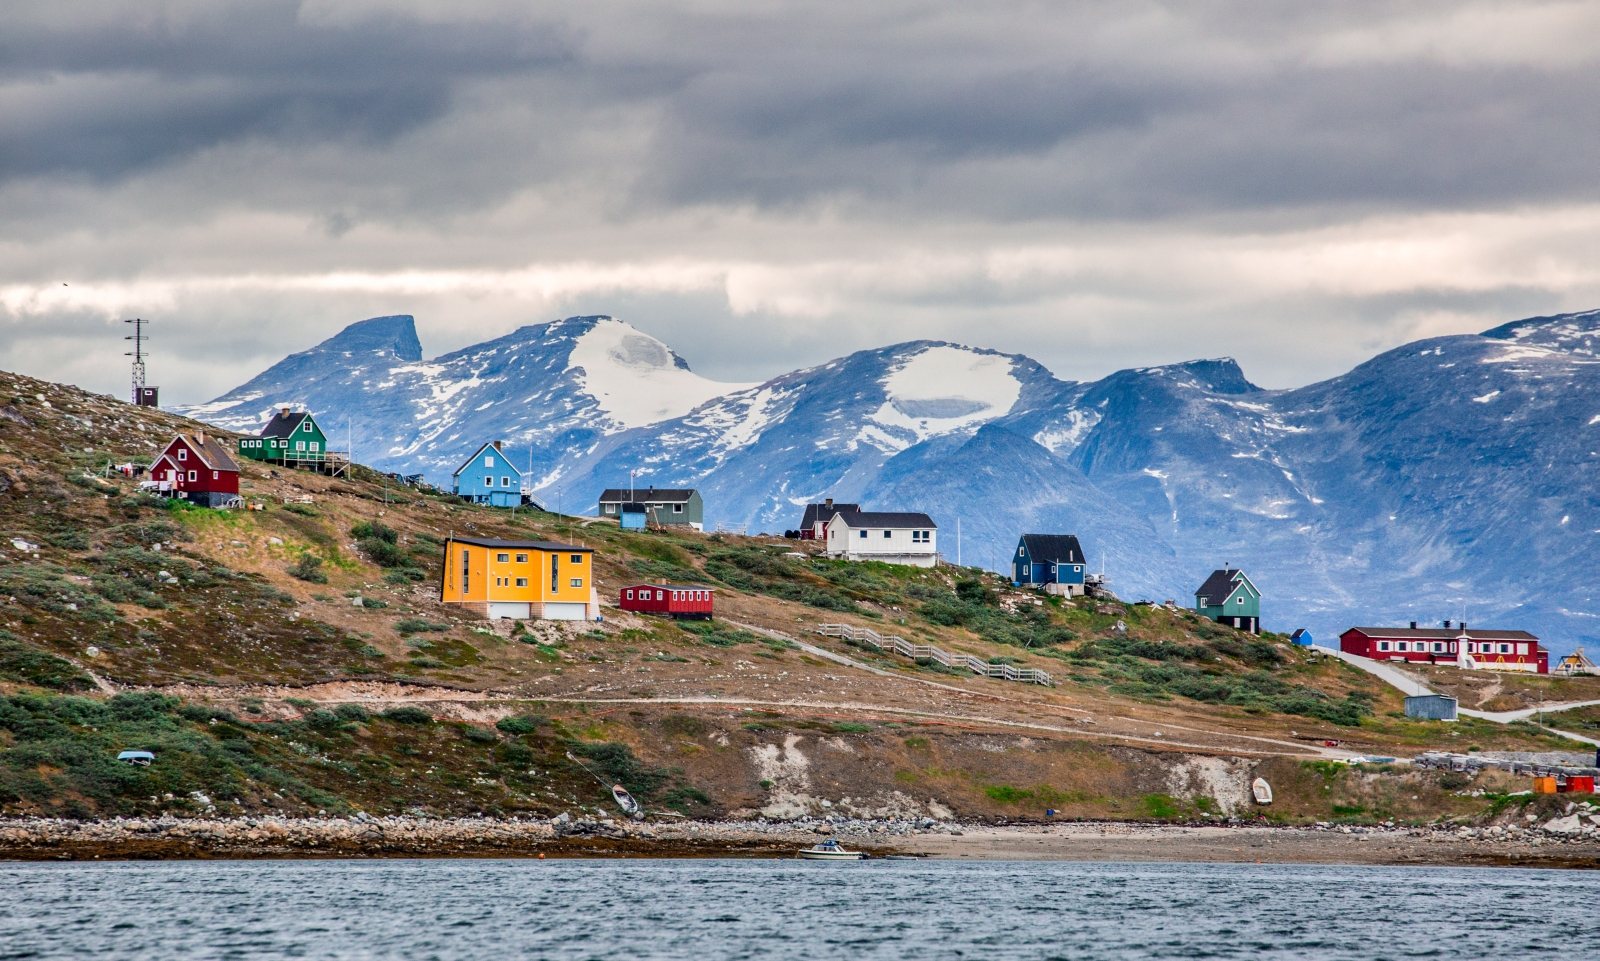 Nukk Fjord in Greenland